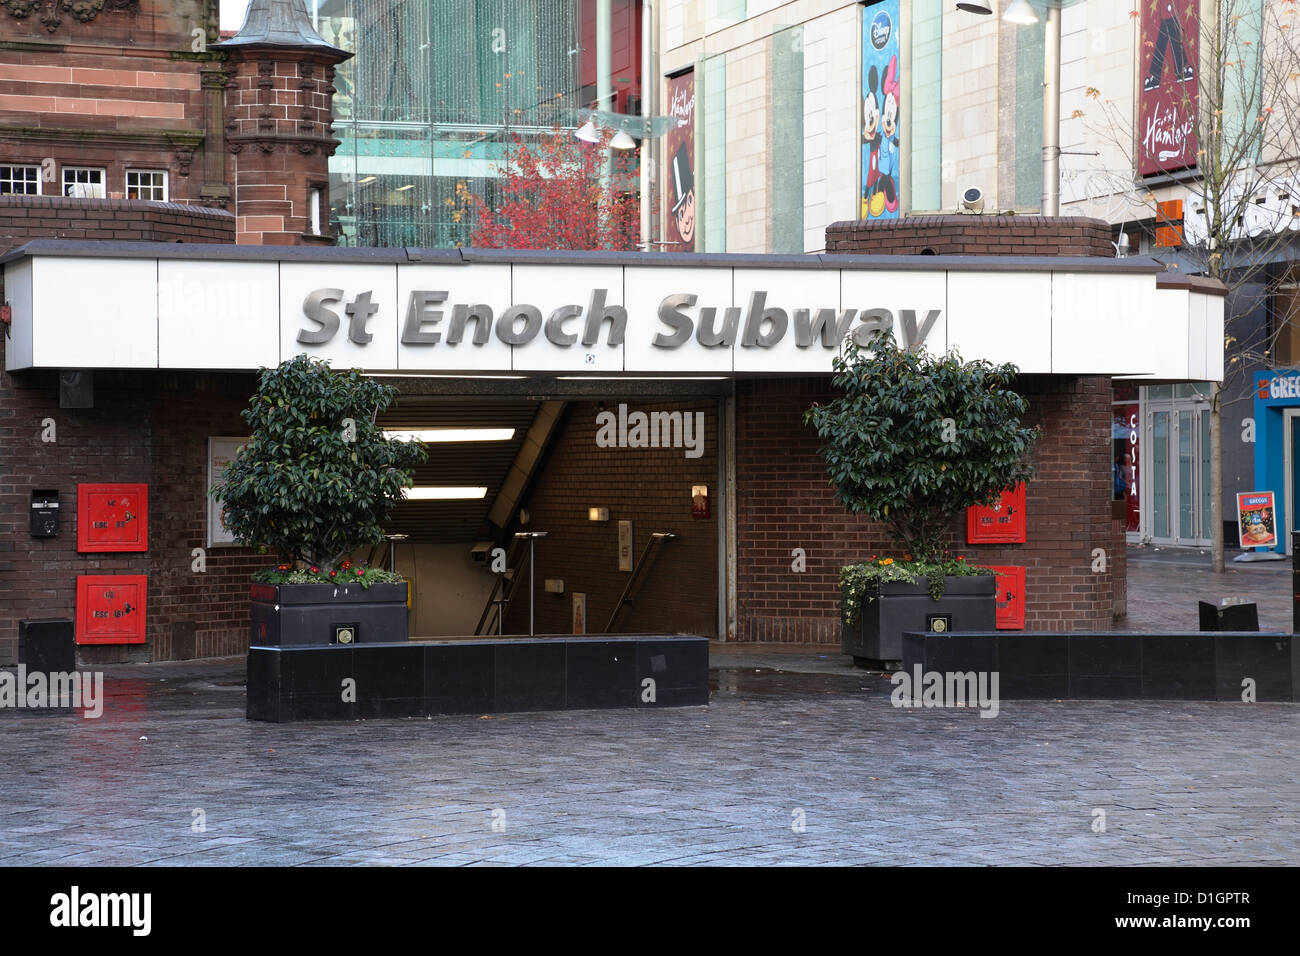 L'ancienne entrée de la station de métro St Enoch dans le centre-ville de Glasgow, en Écosse, au Royaume-Uni, a été remplacée Banque D'Images